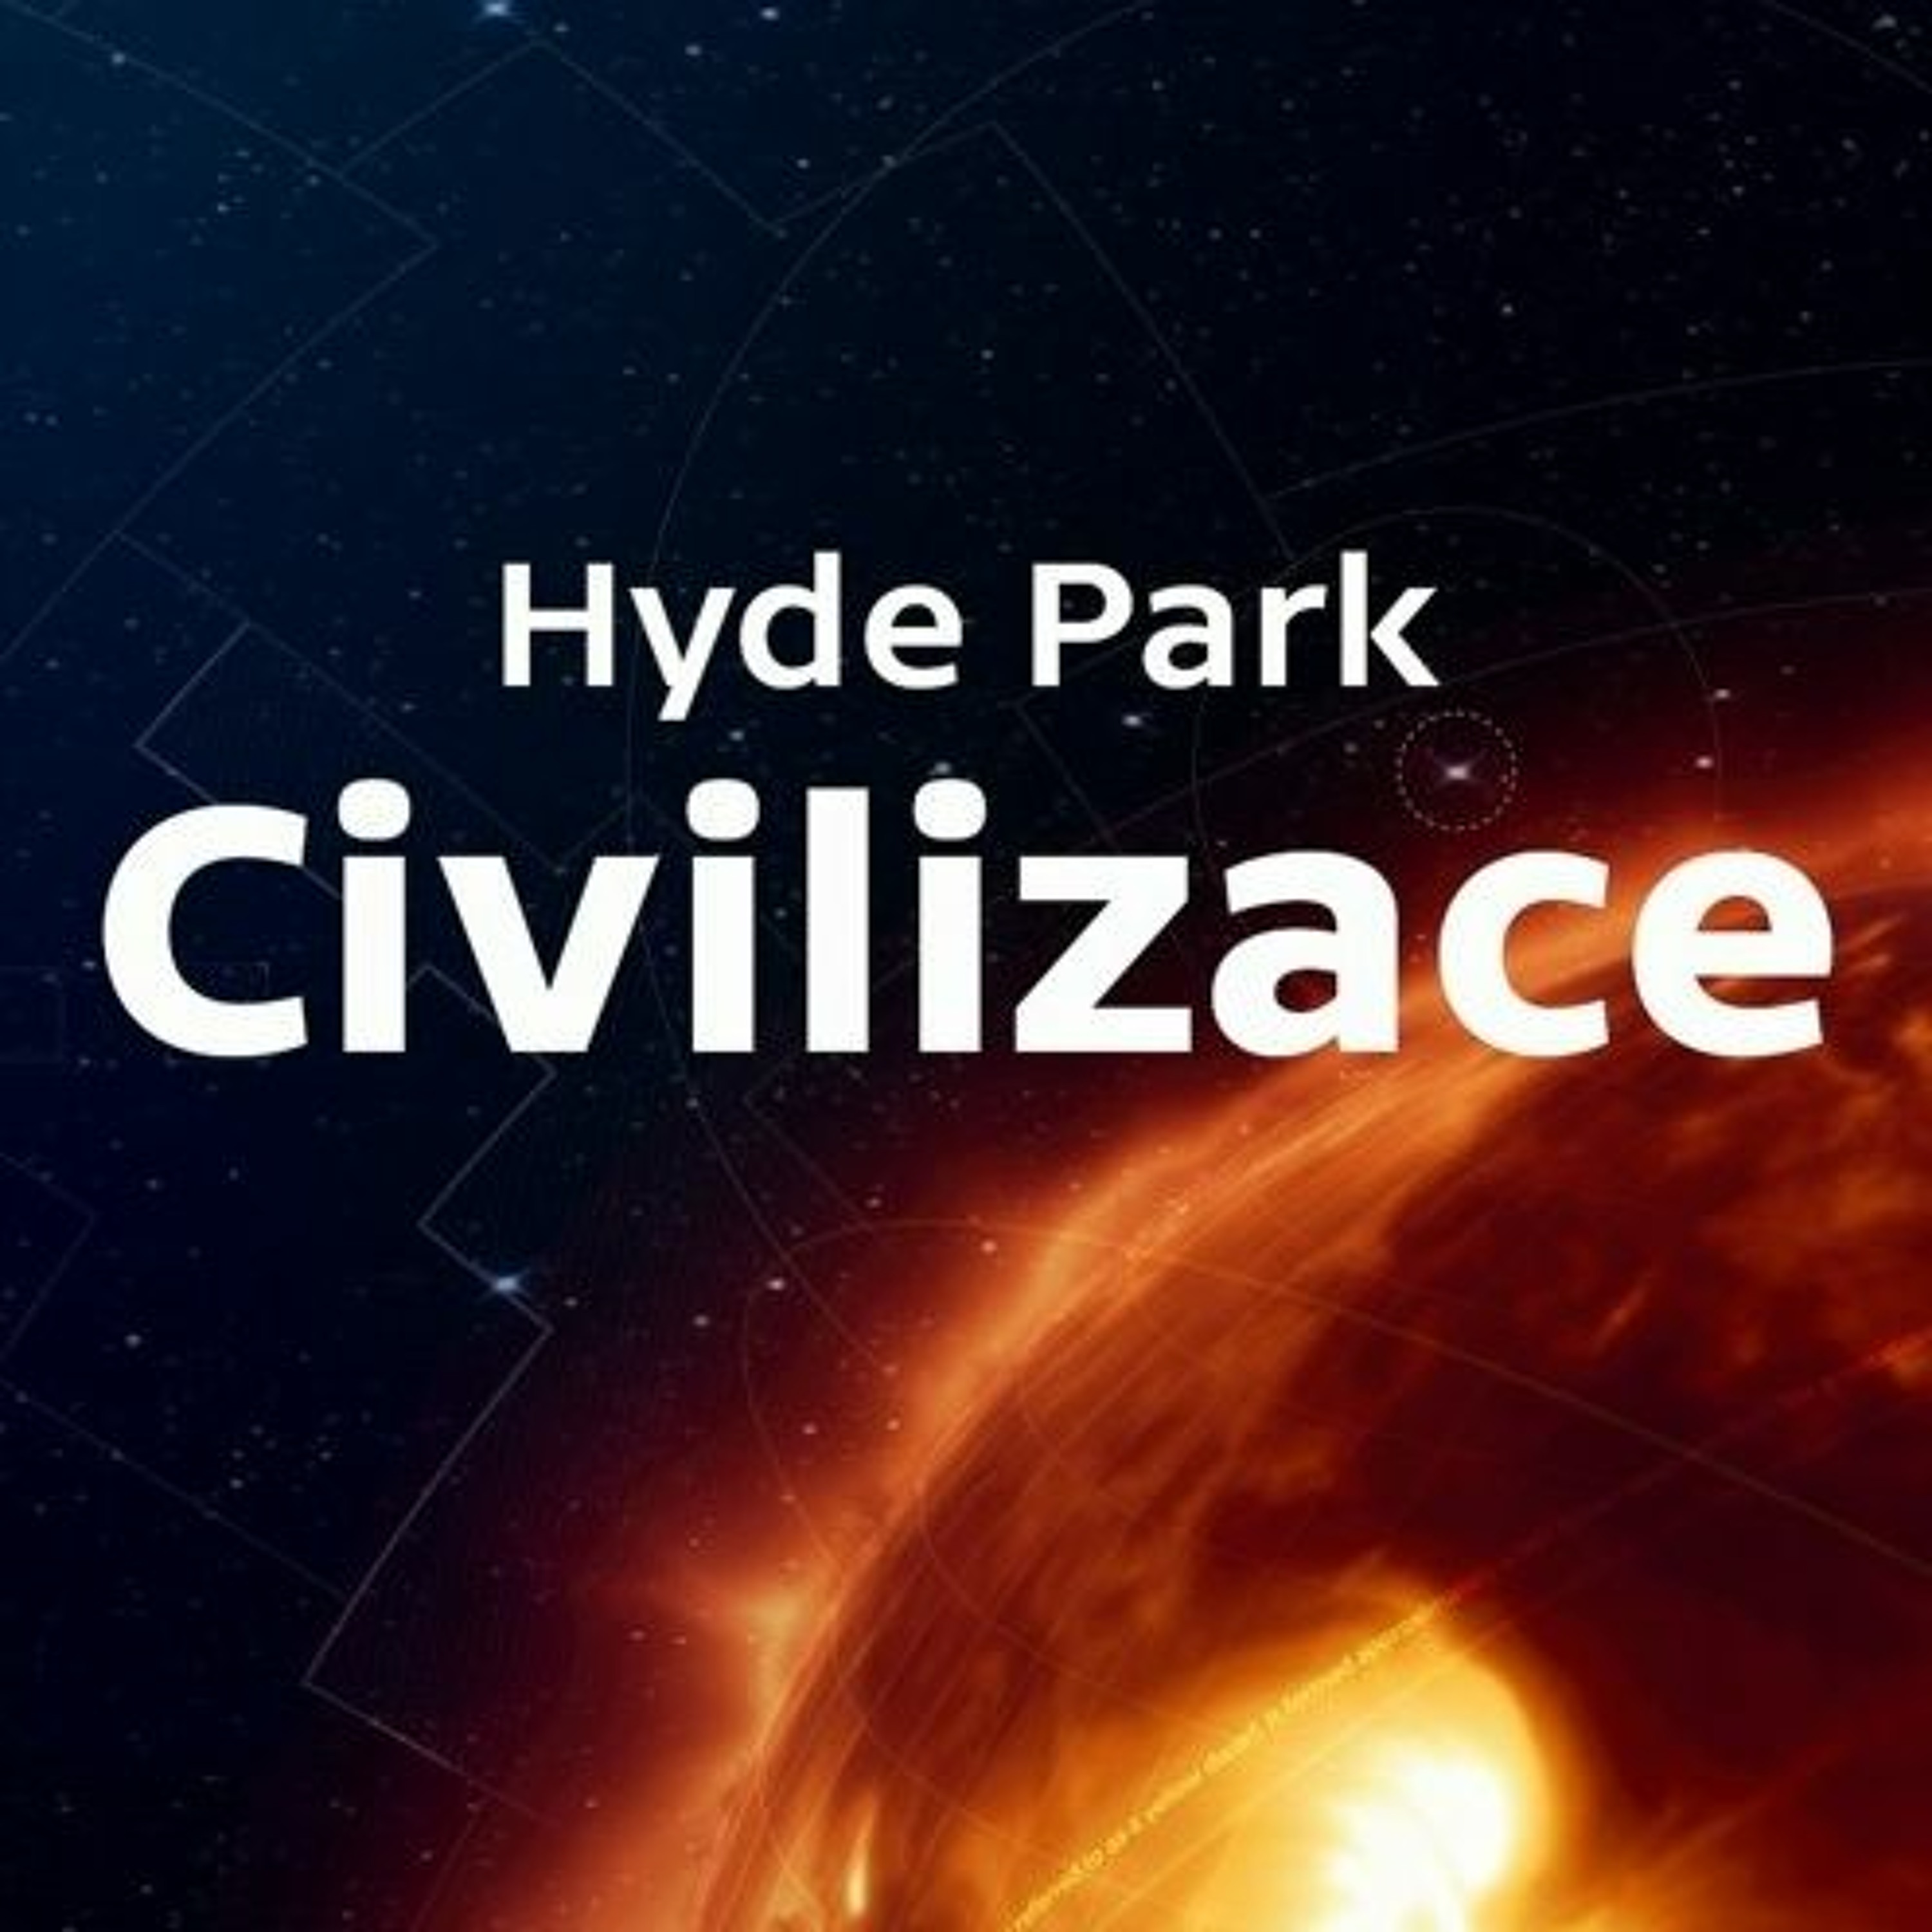 Hyde Park Civilizace - Nobelovy ceny z vědeckých kategorií